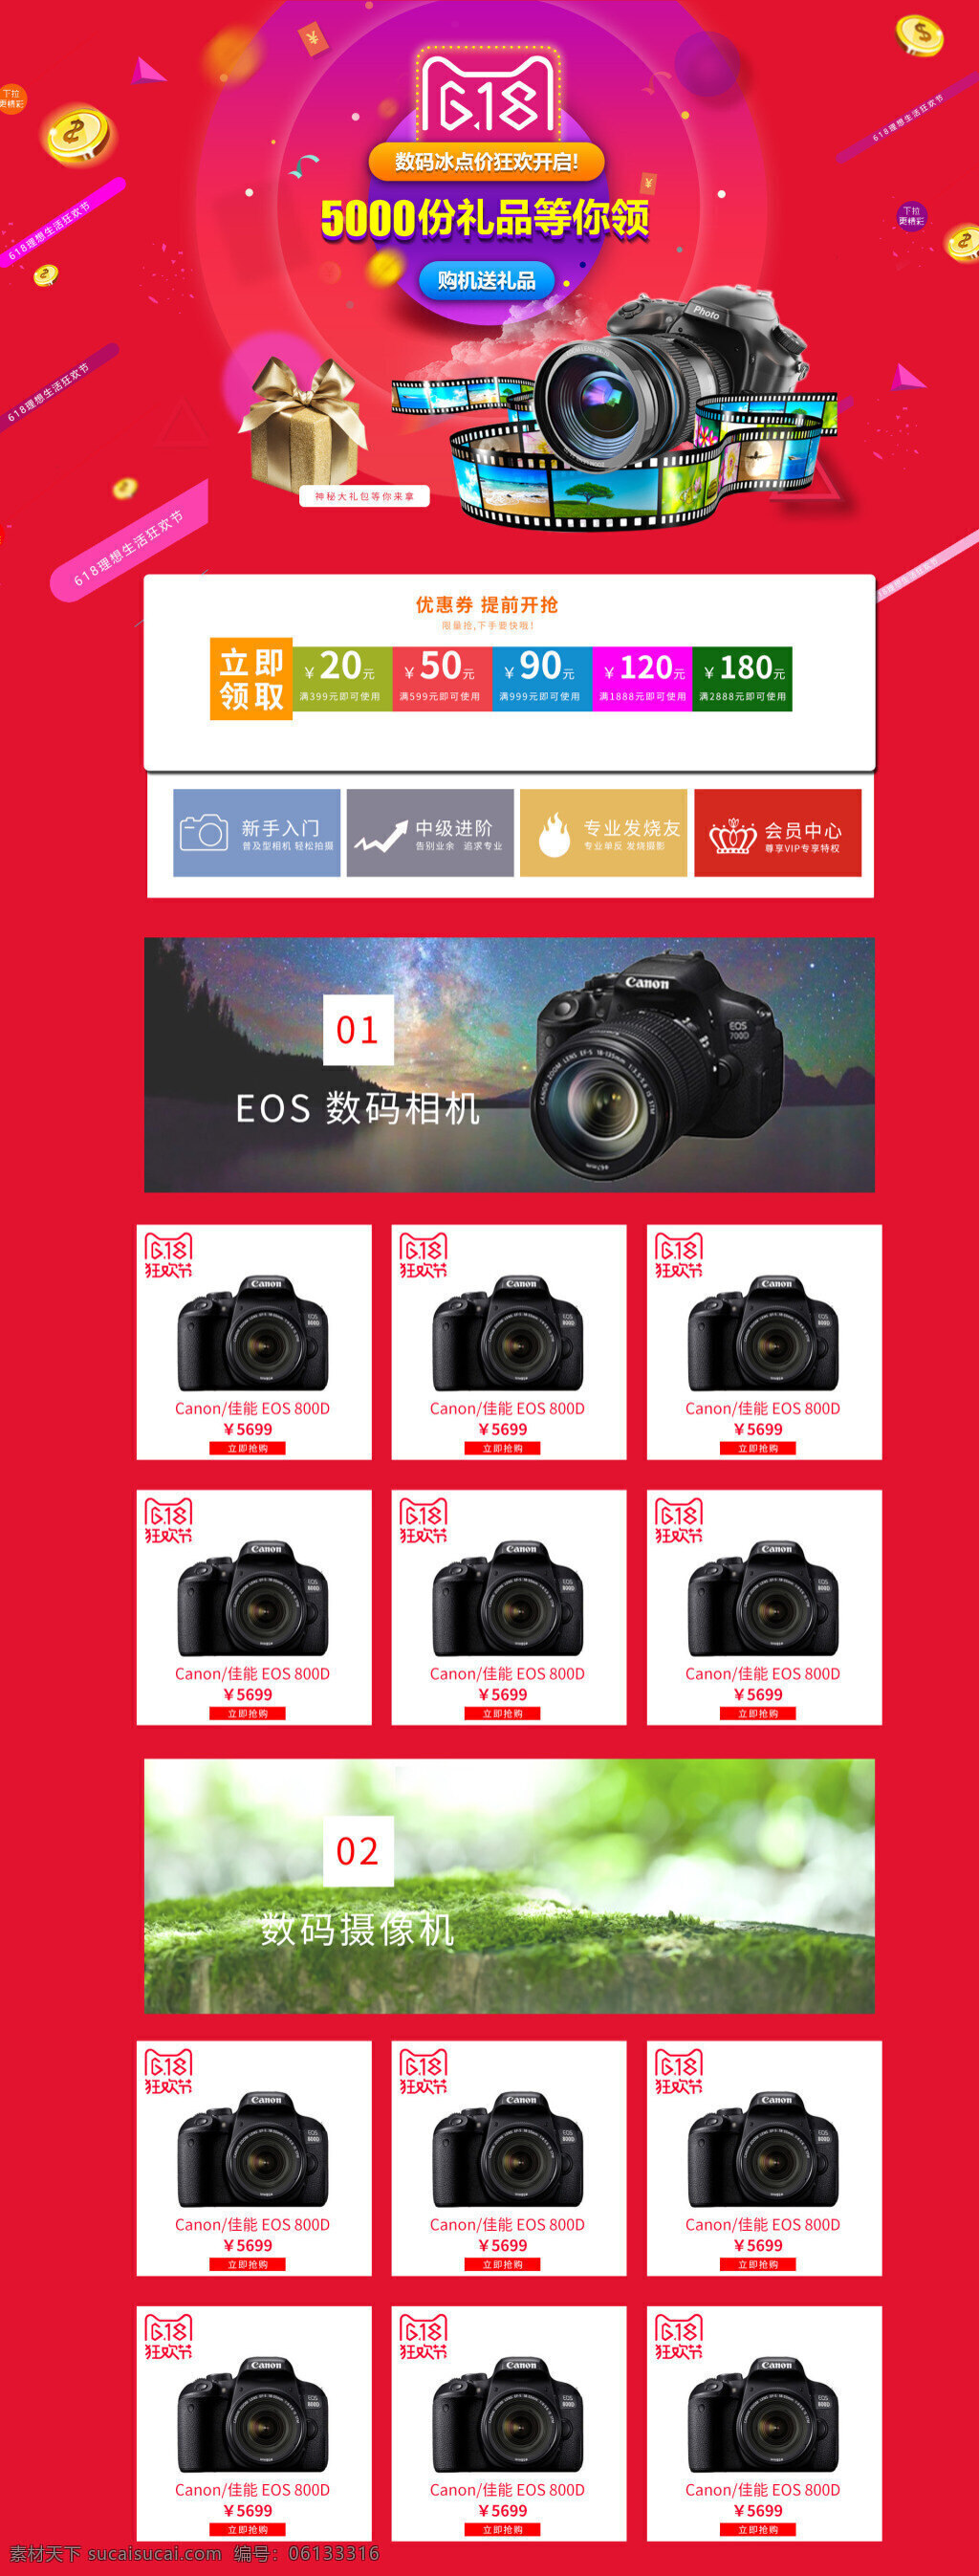 淘宝 天猫 618 狂欢节 年中 大 促 数码相机 首页 京东 电商 理想 生活 年中大促 数码 相机